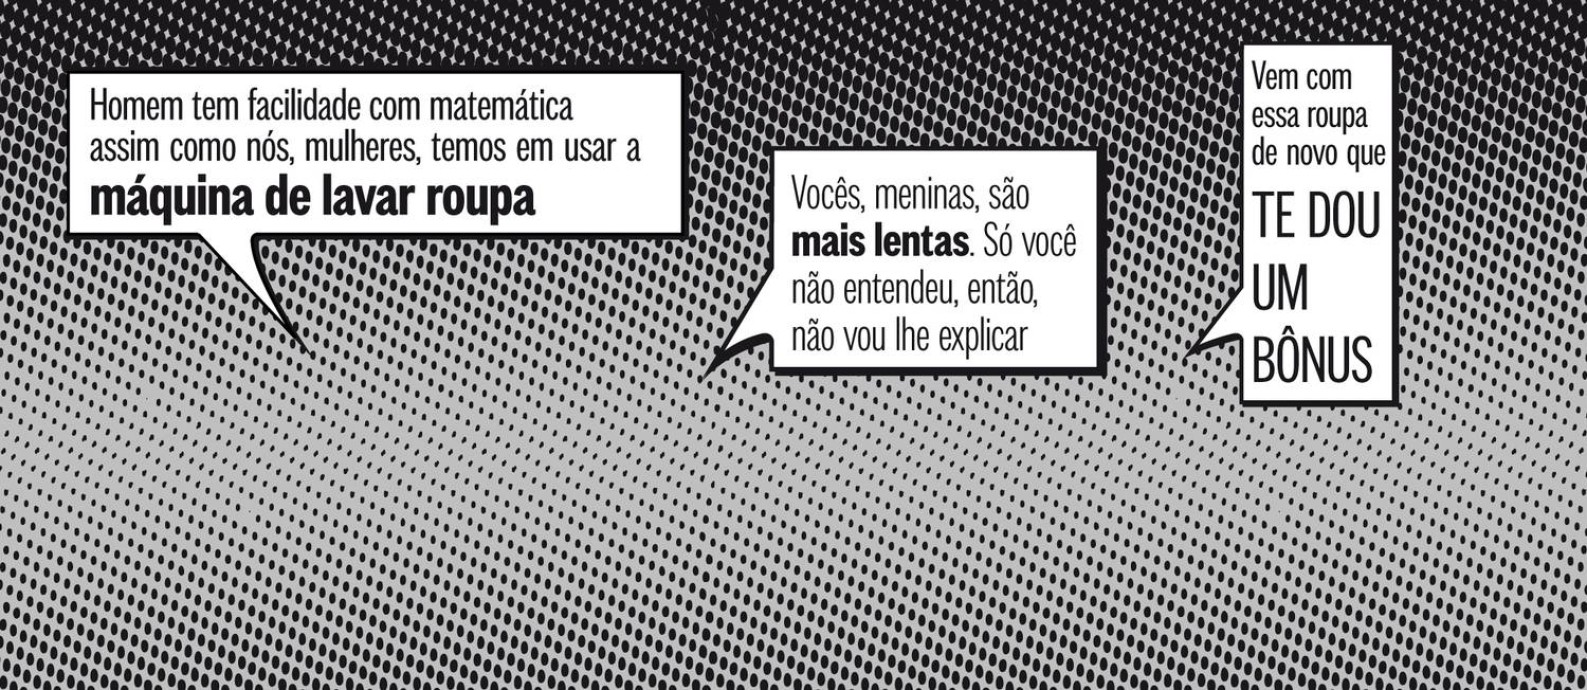 Frases ditas por professores a alunas, numa campanha do Instituto de Física, da Universidade Federal do Rio Grande do Sul Foto: O Globo